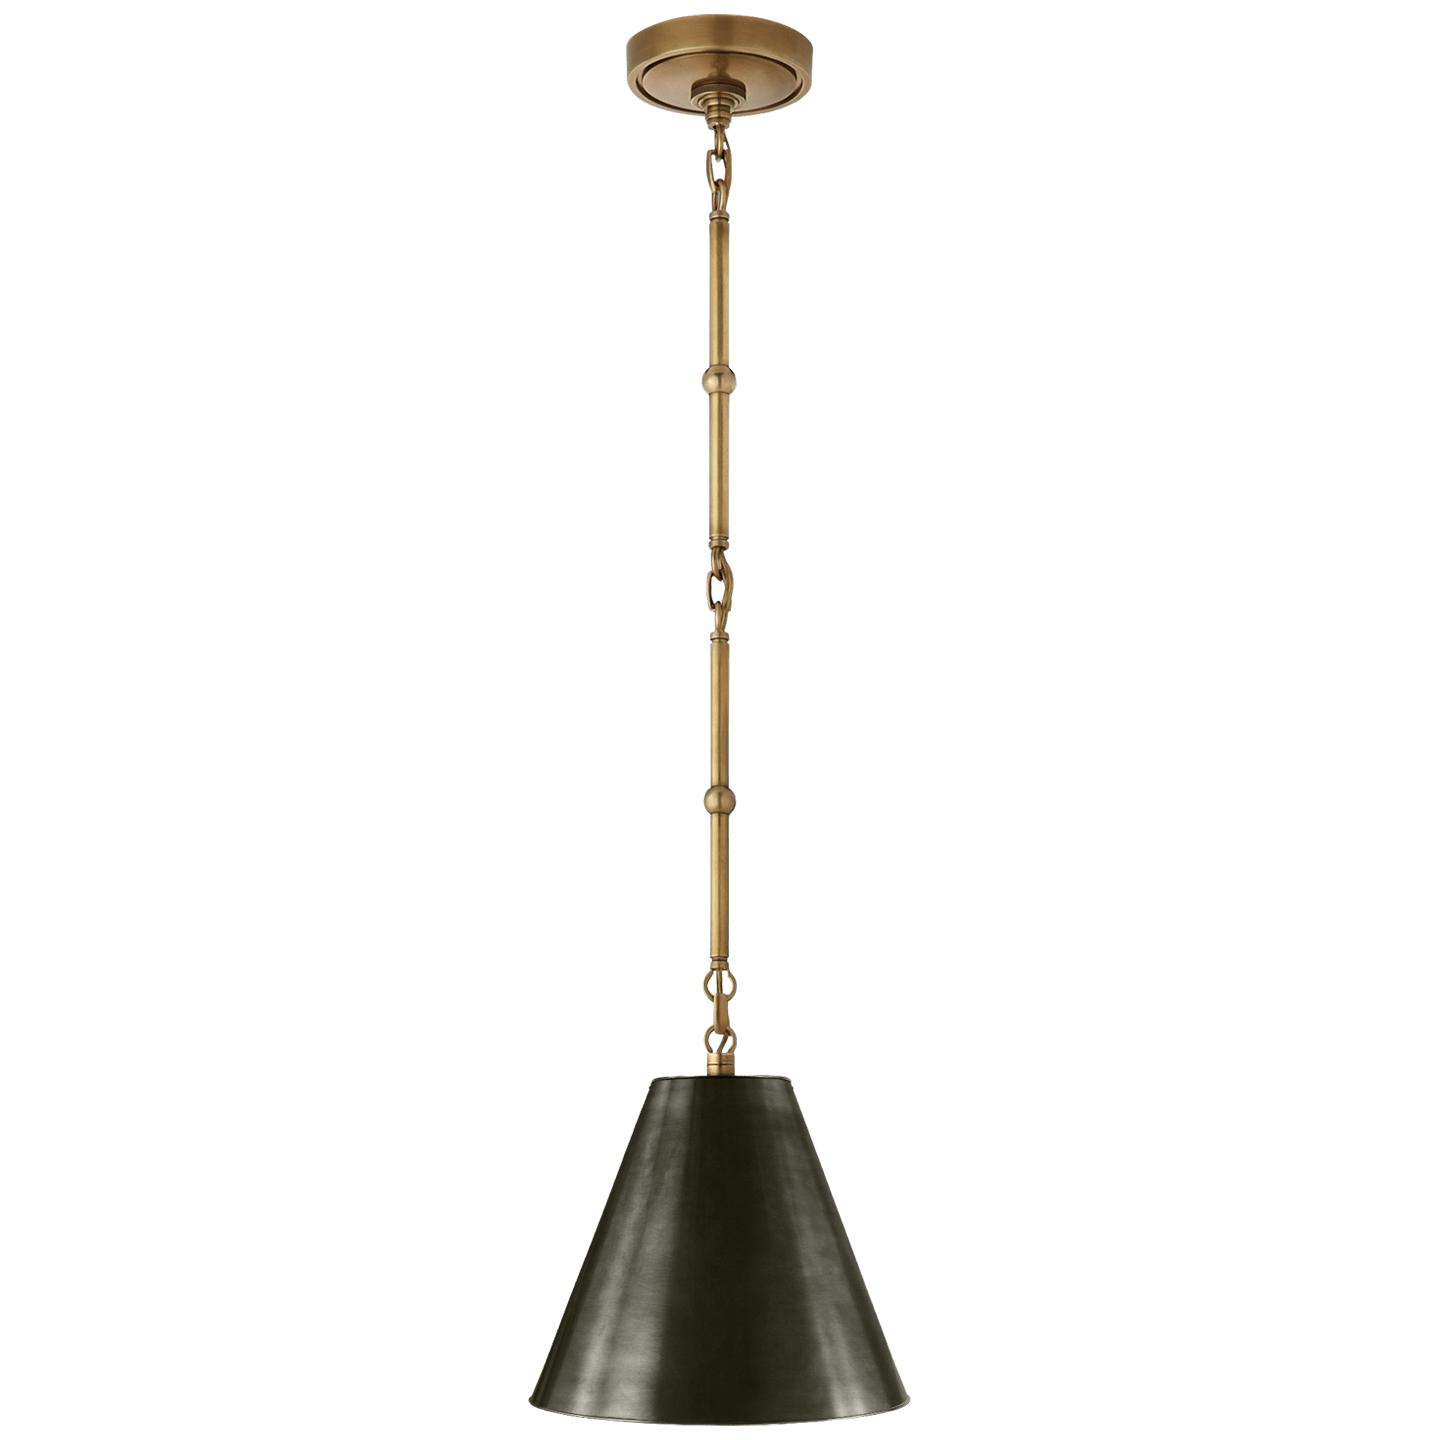 Купить Подвесной светильник Goodman Petite Hanging Shade в интернет-магазине roooms.ru